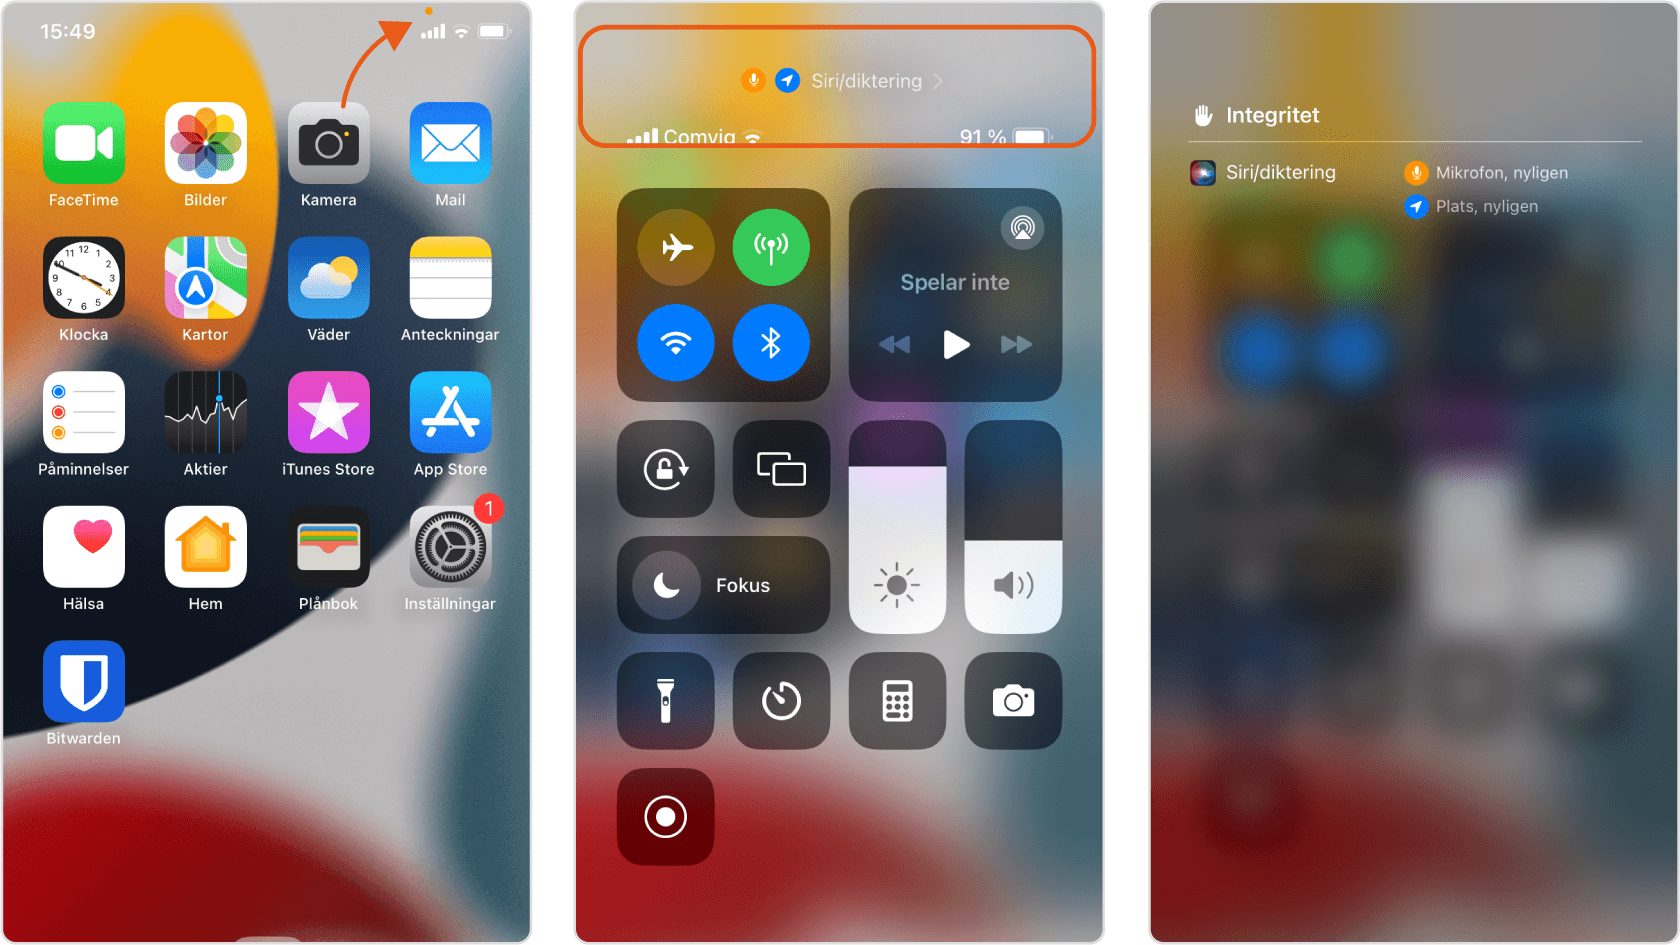 Skärmavbilder från IOS som visar den orangea mikrofonindikatorn och appen som triggade tändningen av den.